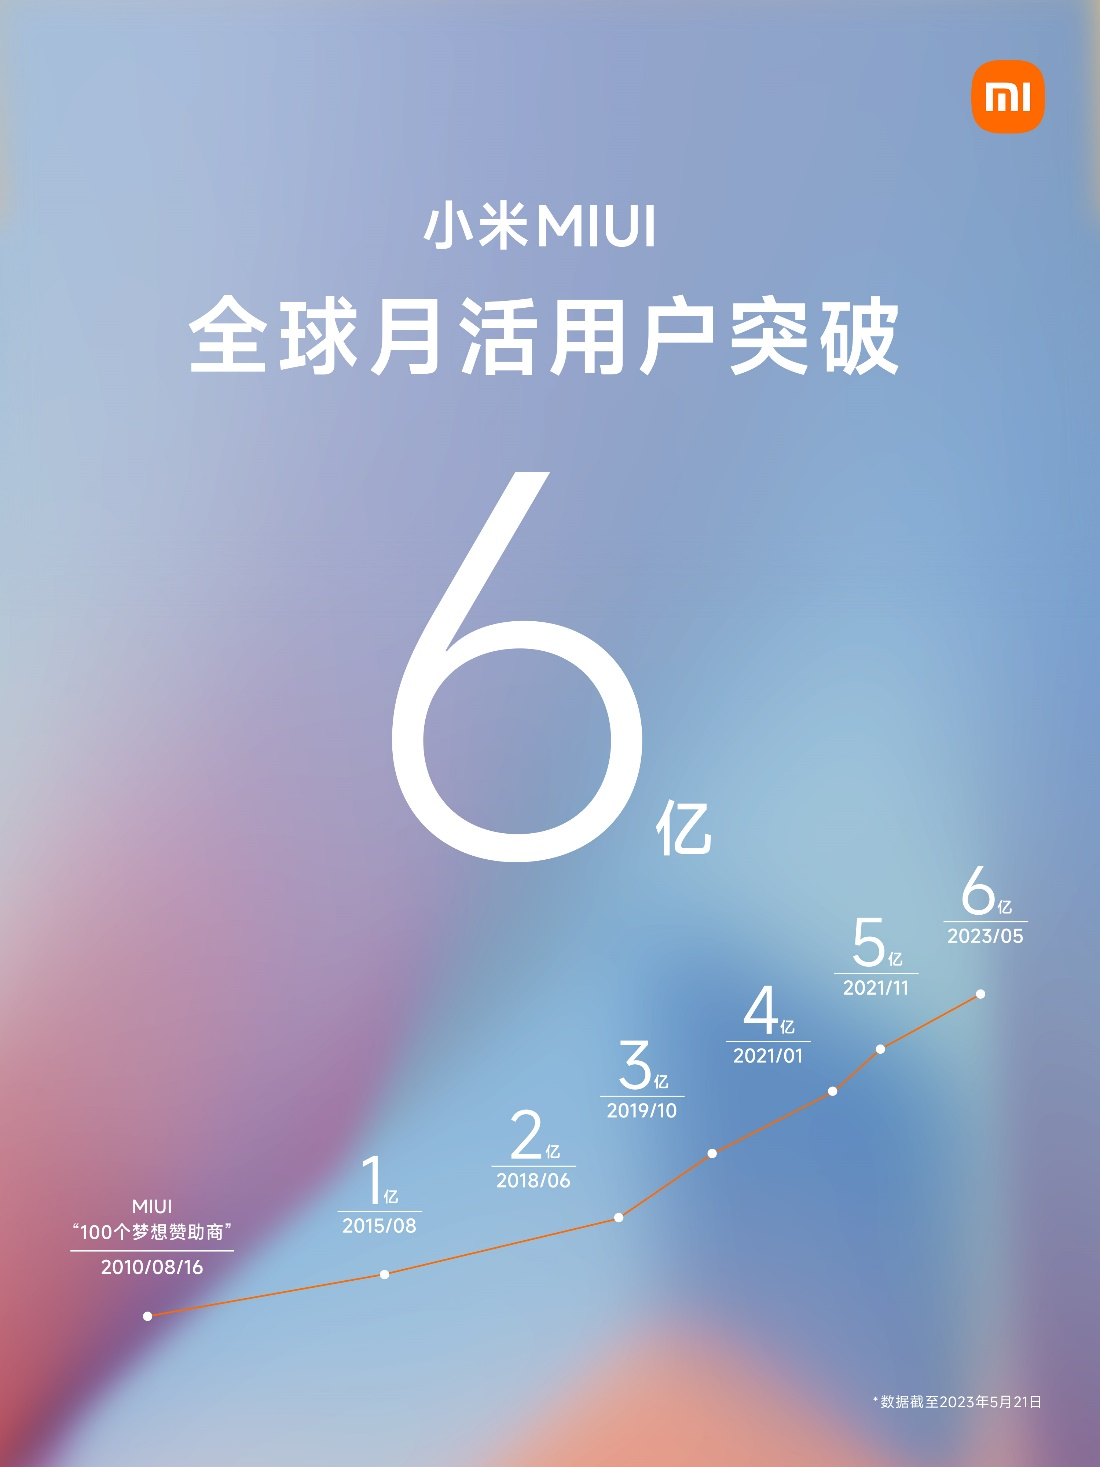 小米MIUI月活用户突破6亿 “手机×AIoT